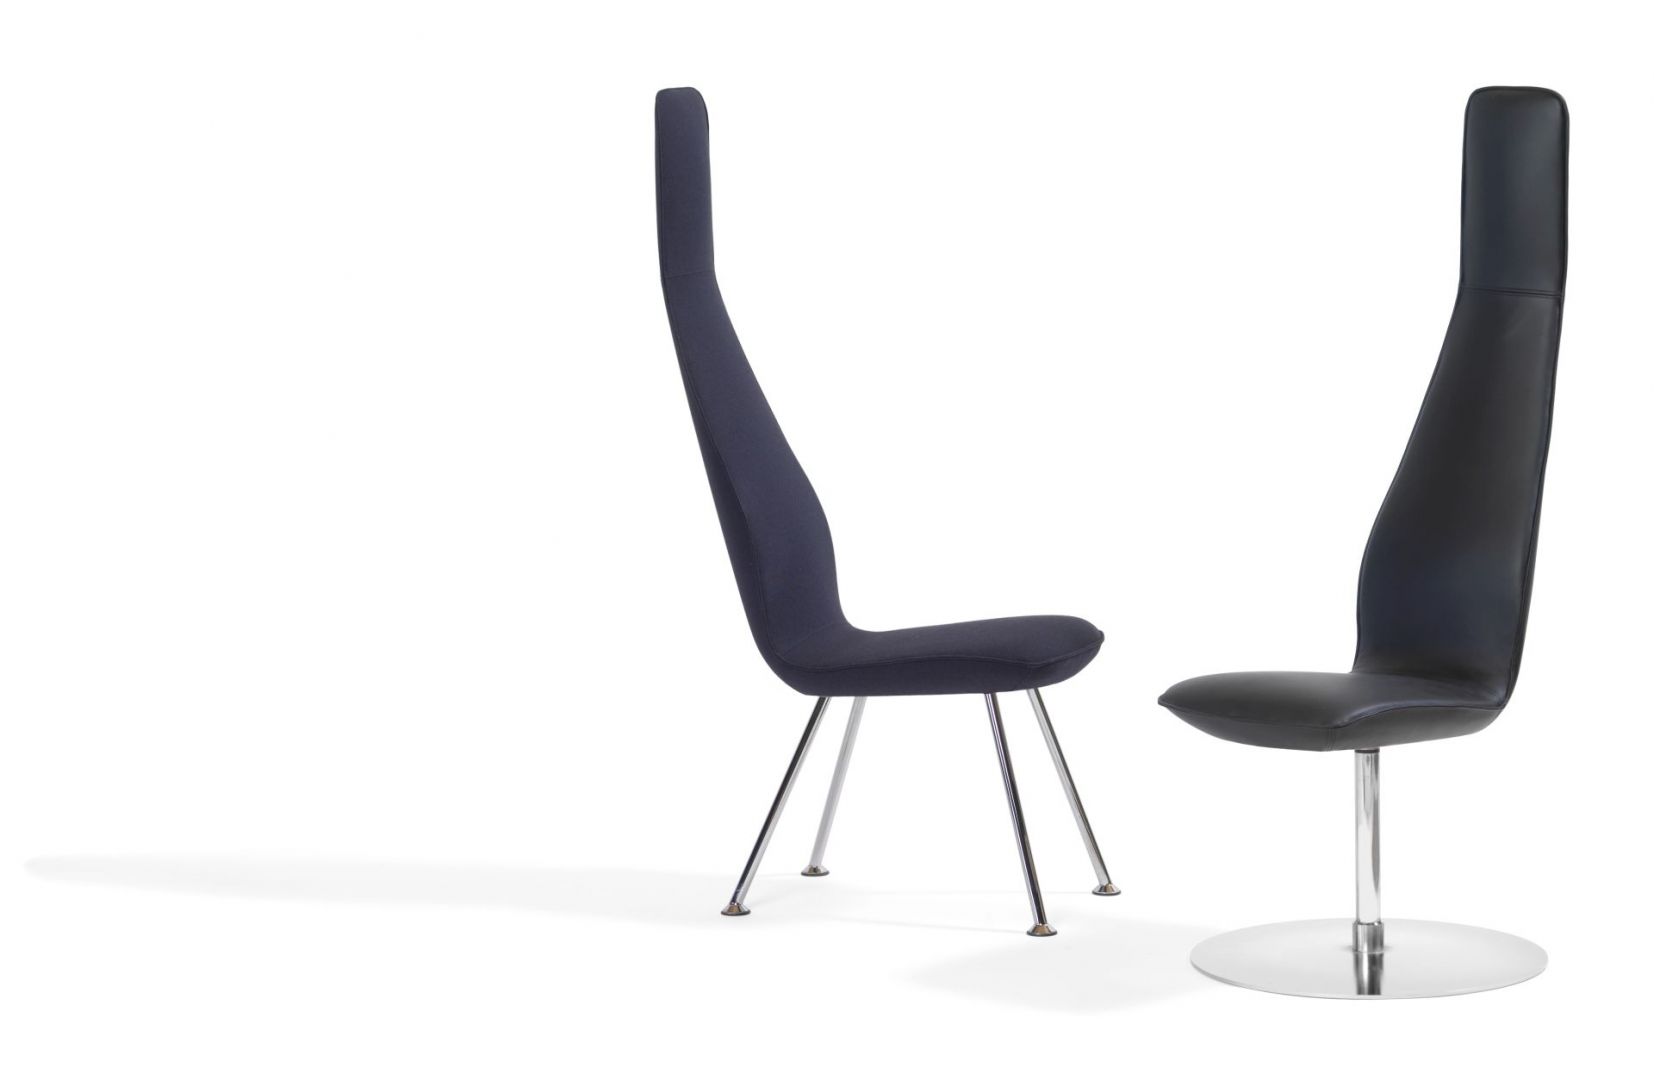 Krzesła Poppe marki BlaStation mają nietypowy design, a dzięki smukłemu, wysokiemu oparciu, zapewniają komfort plecom. Fot. BlaStation